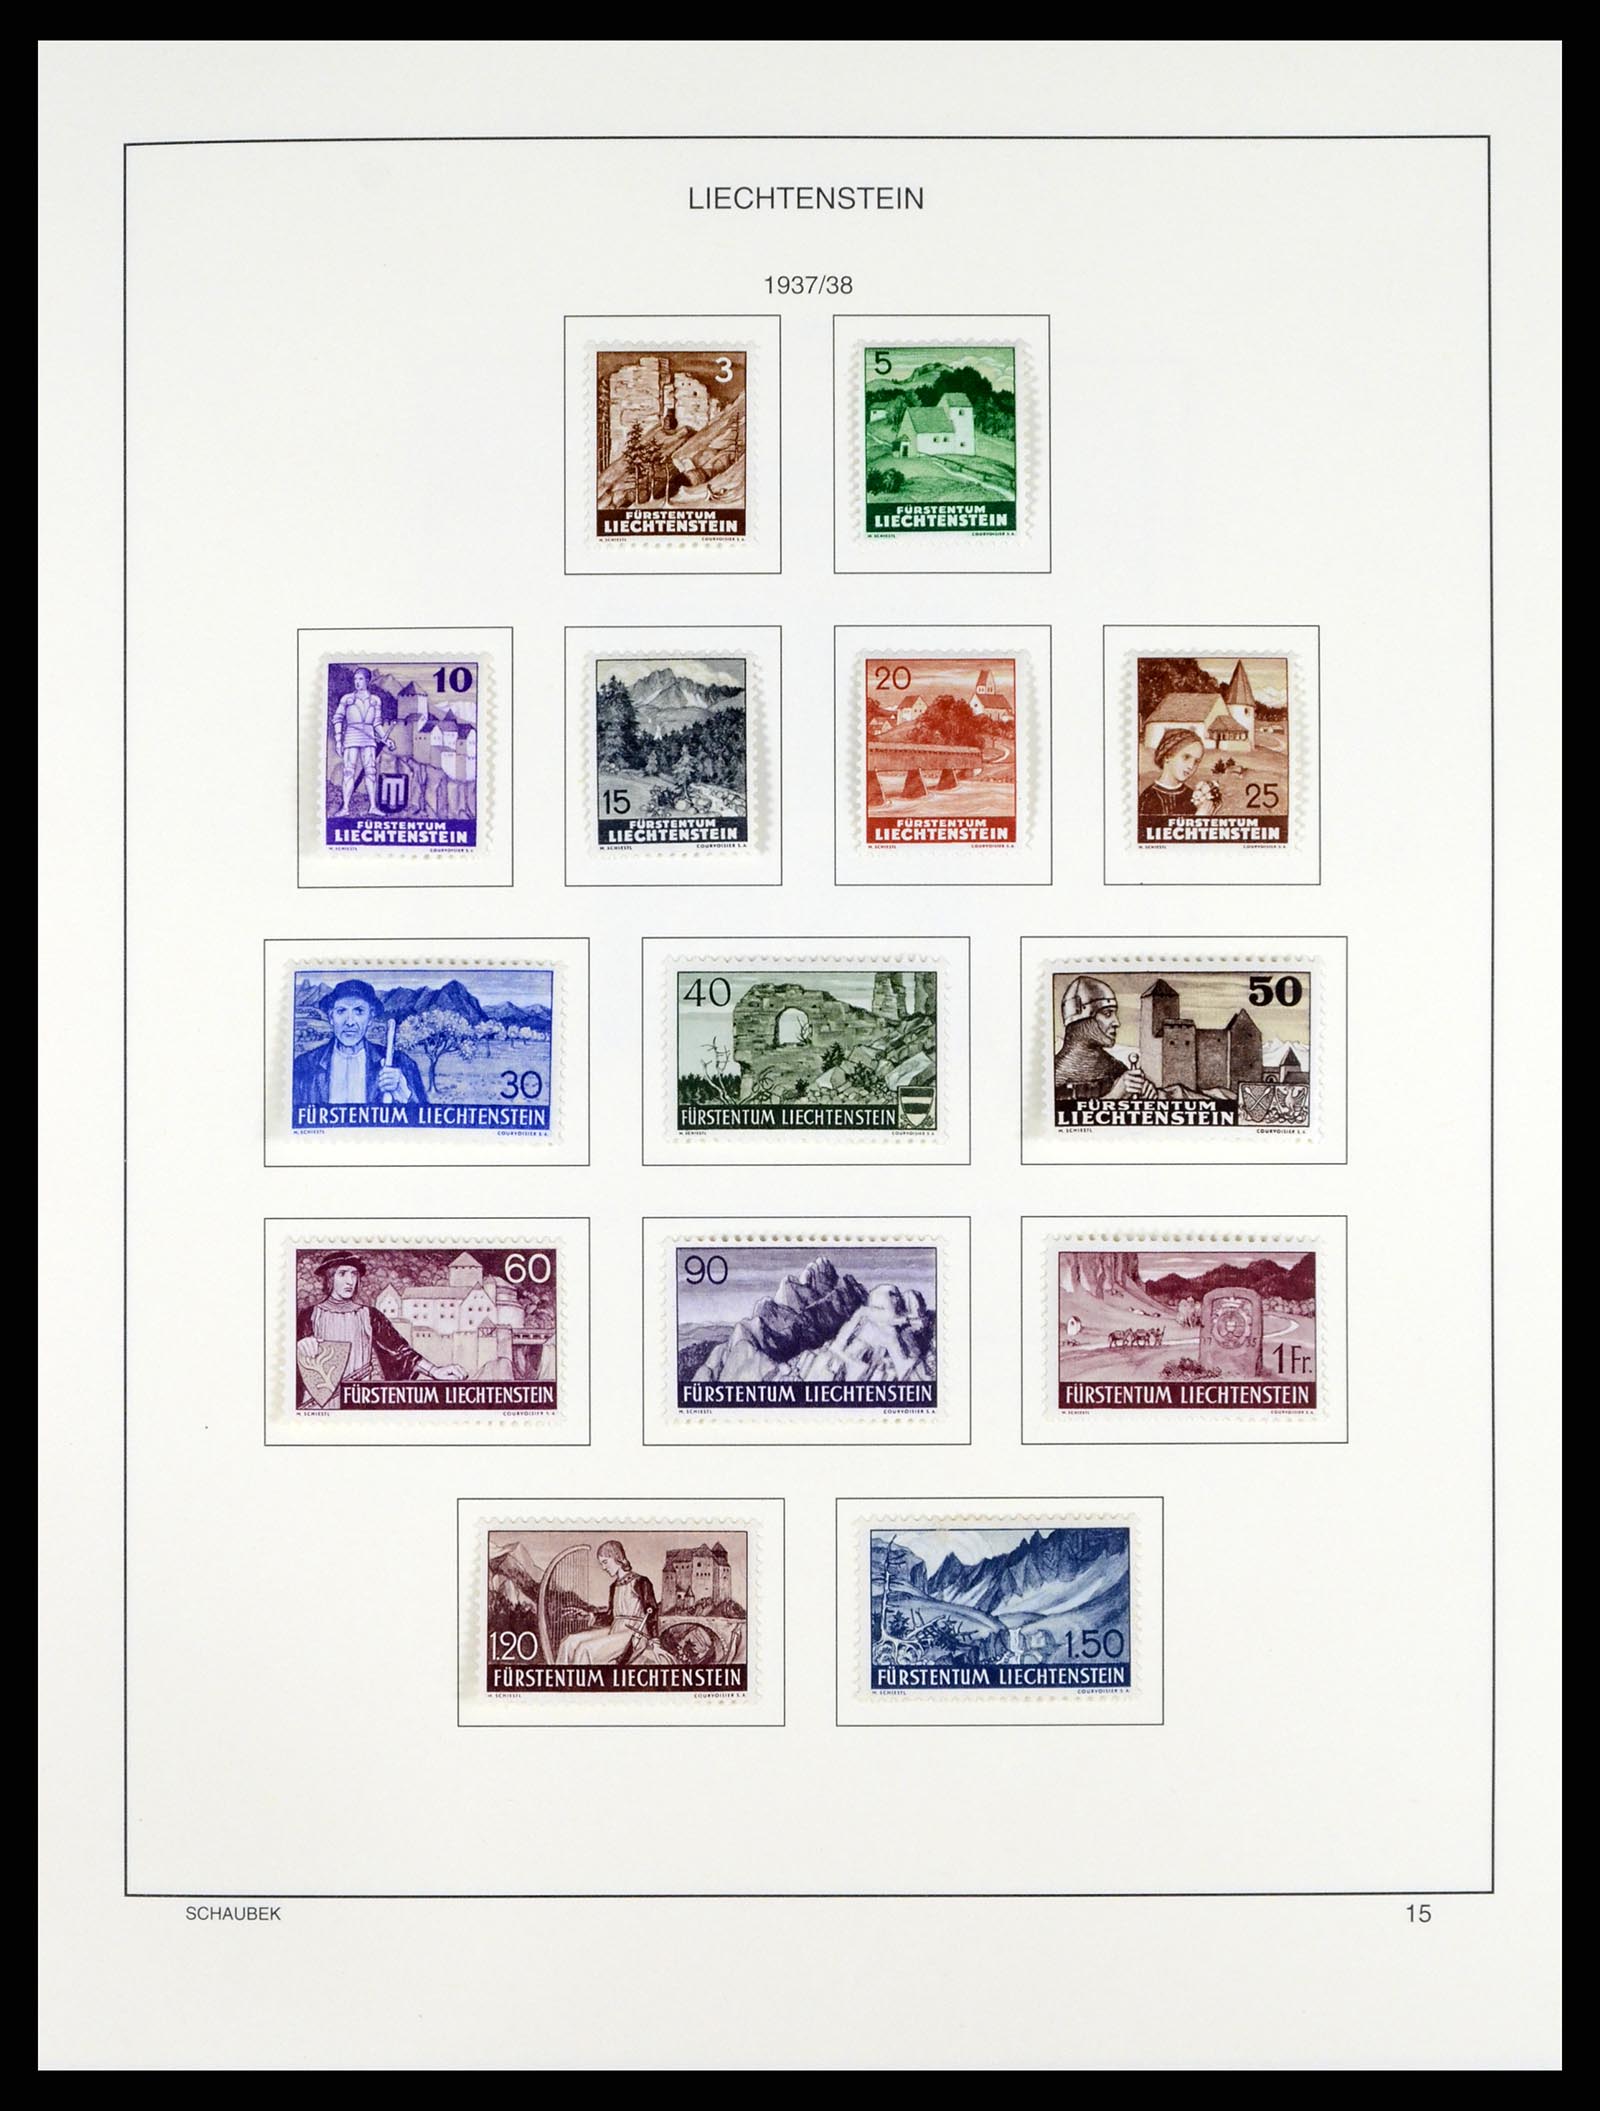 37547 017 - Stamp collection 37547 Liechtenstein 1912-2011.